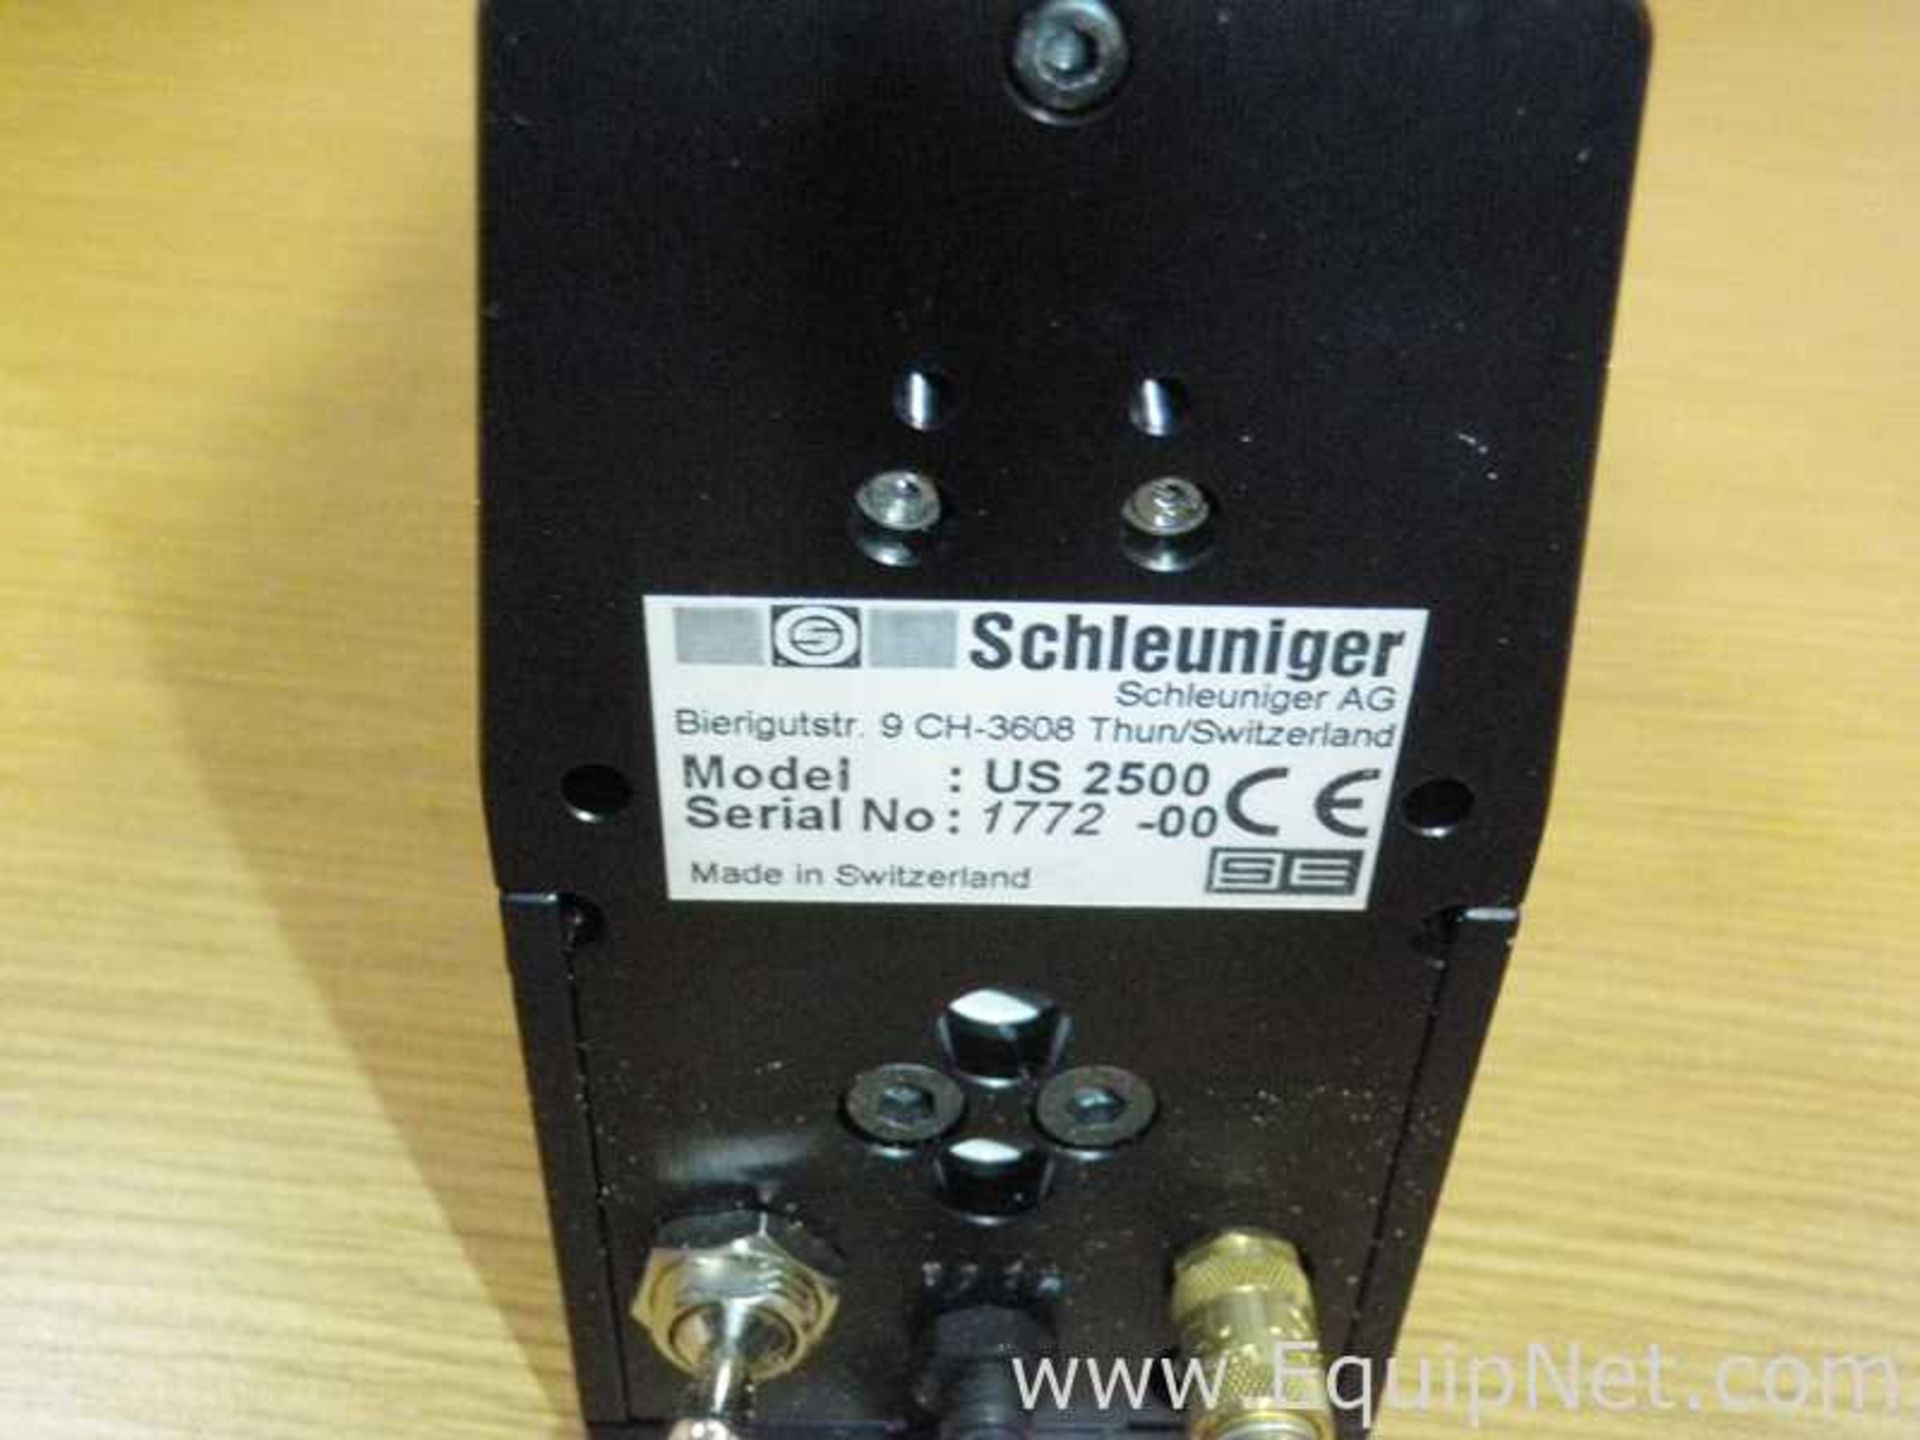 Unused Schleuniger UniStrip 2500 Pneumatic Wire Stripper - Image 4 of 4